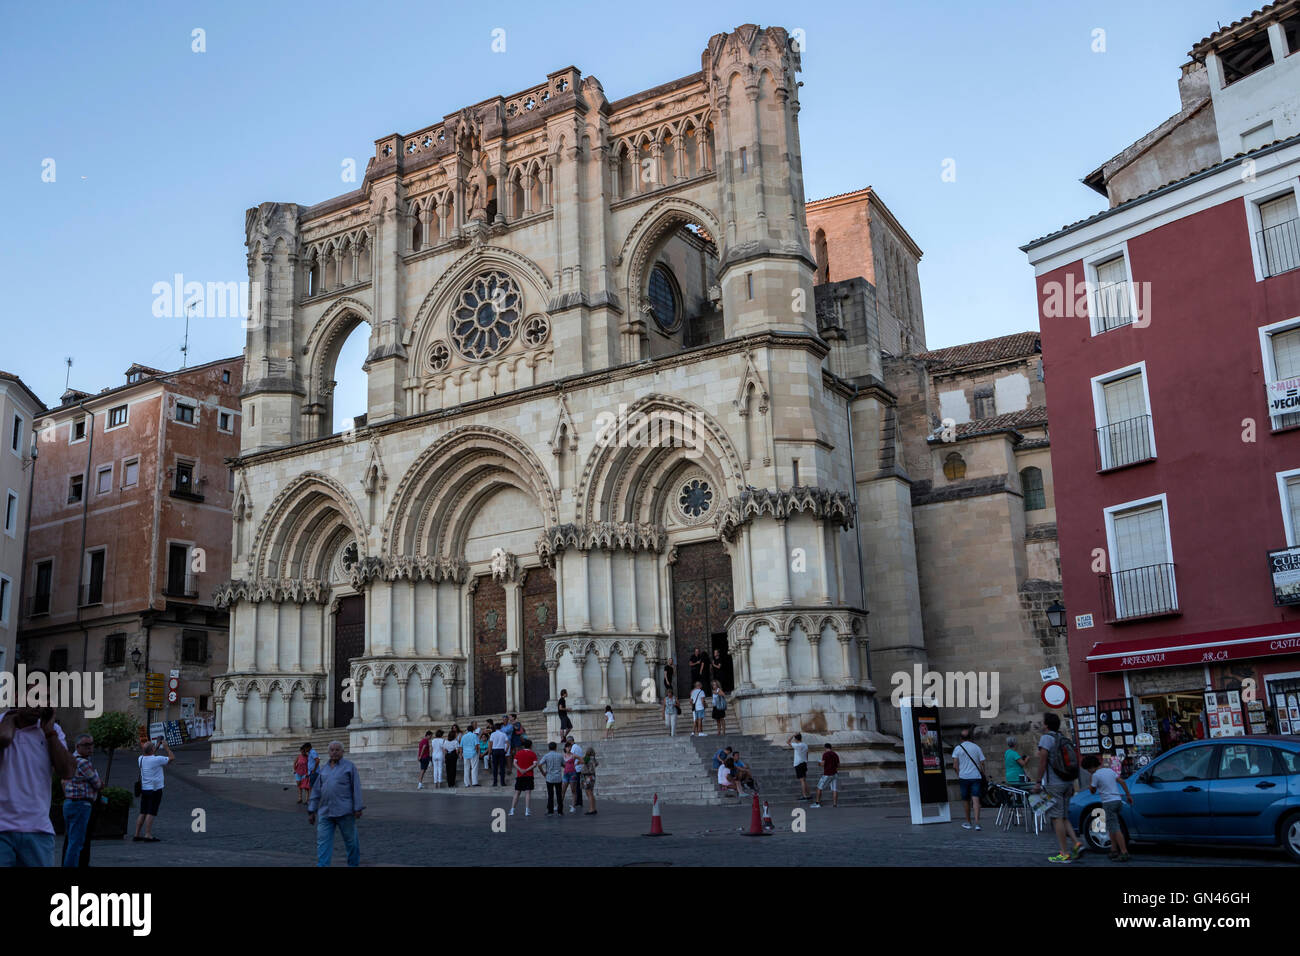 CUENCA, España - 2 de abril de 2016: Los turistas caminan junto a la fachada de la Catedral de Cuenca, la catedral está dedicada a San Julián, Foto de stock